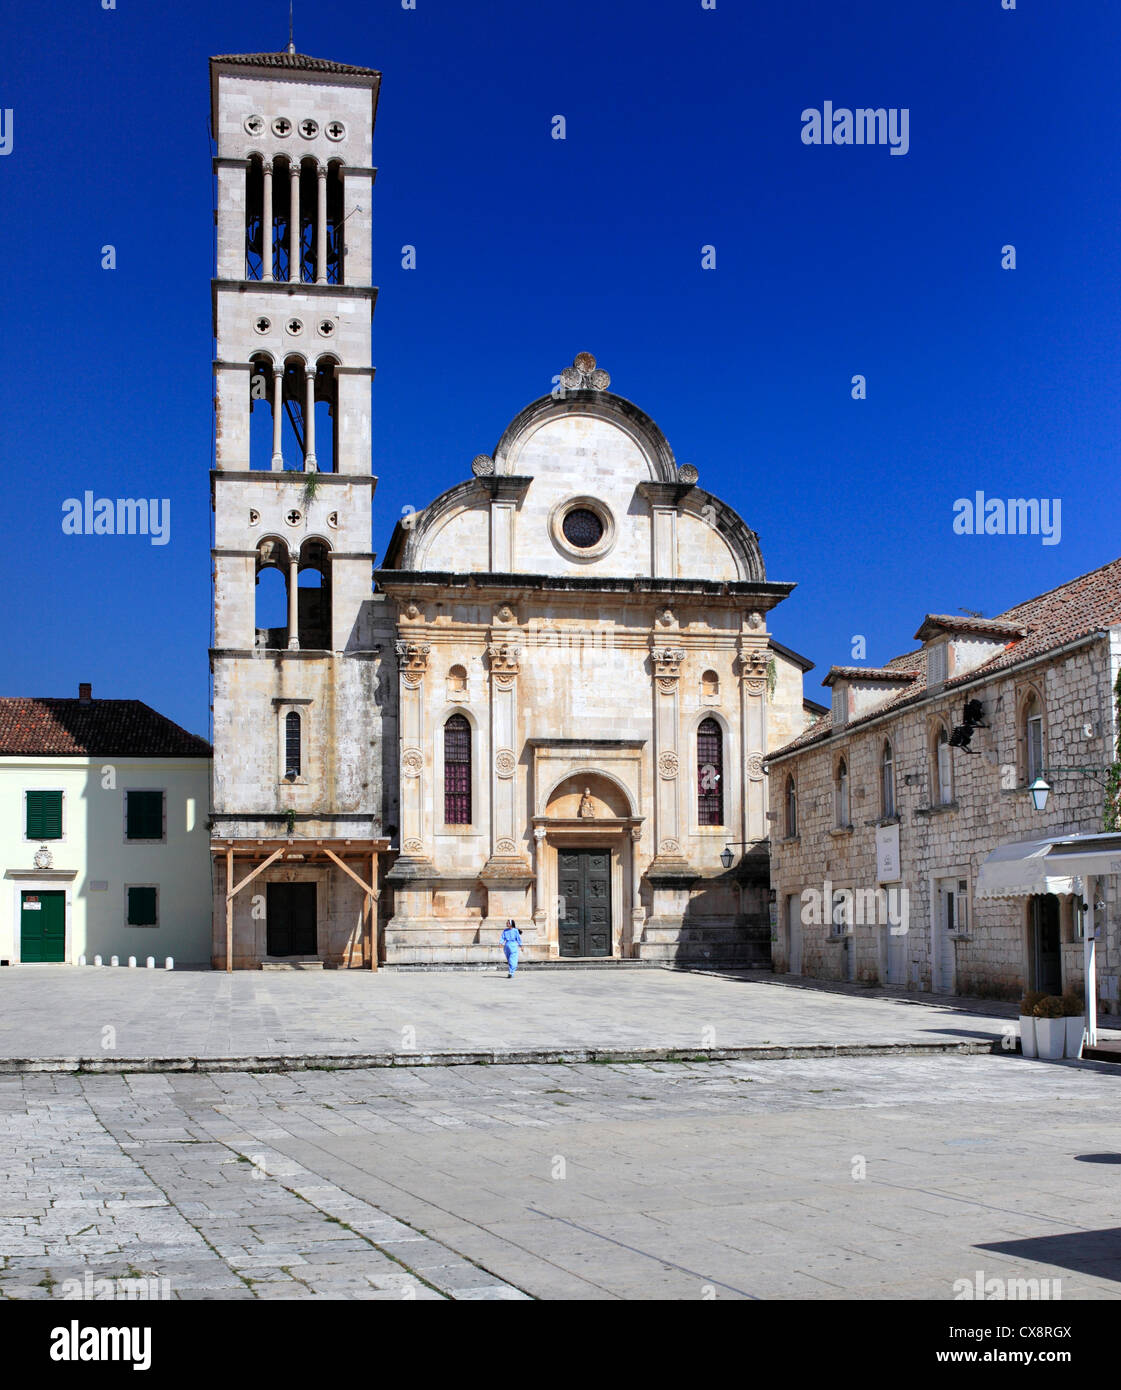 Cathédrale de Sv. Stjepan (St. Stephen), place centrale (Pjaca), la ville de Hvar, île de Hvar, Croatie, la côte dalmate Banque D'Images